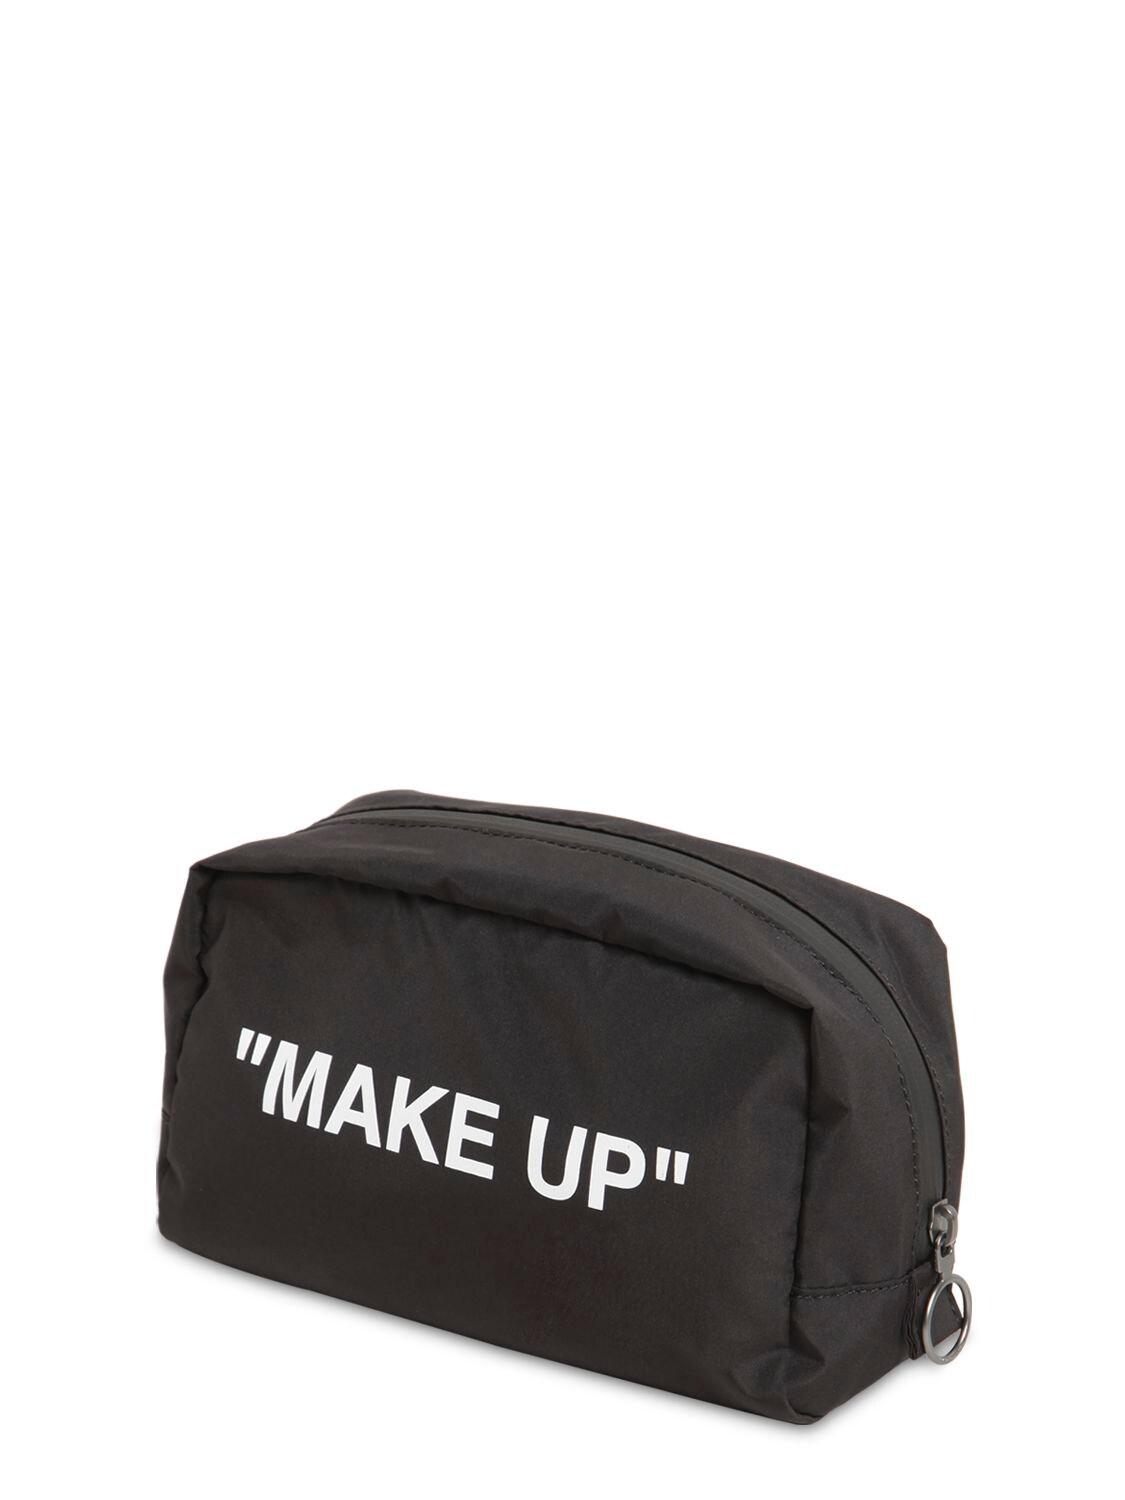 Off White Embellished Makeup Bag